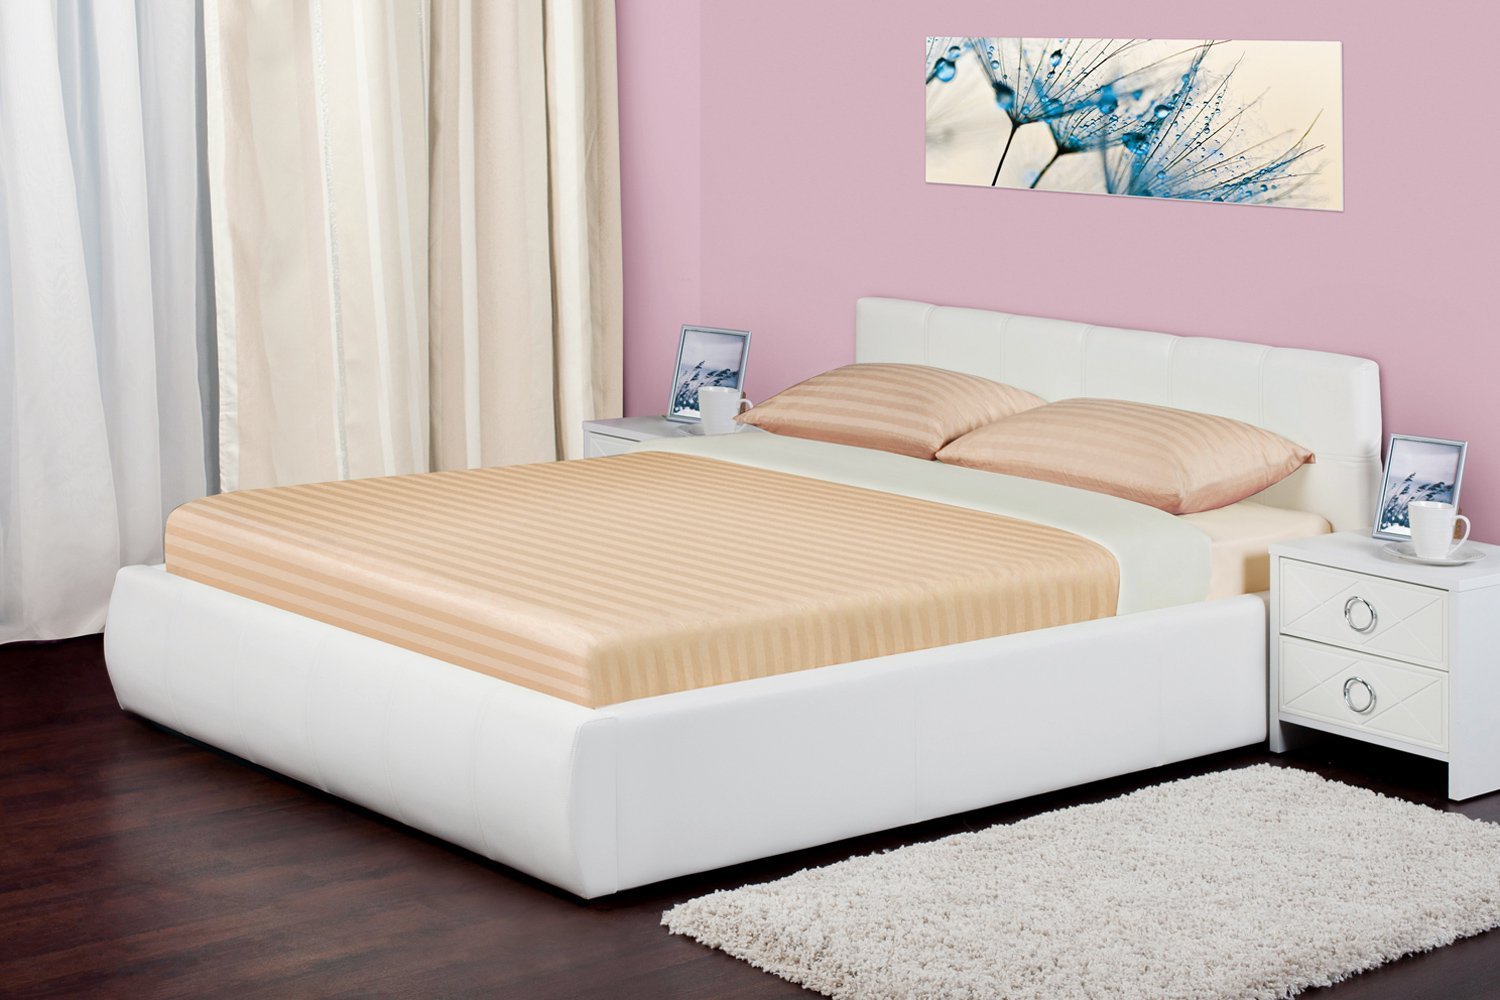 Производители кроватей 160х200 купить. Хофф кровати 160х200. Кровать хофф белая 160 200. Кровать двуспальная 160х200 Хоф.